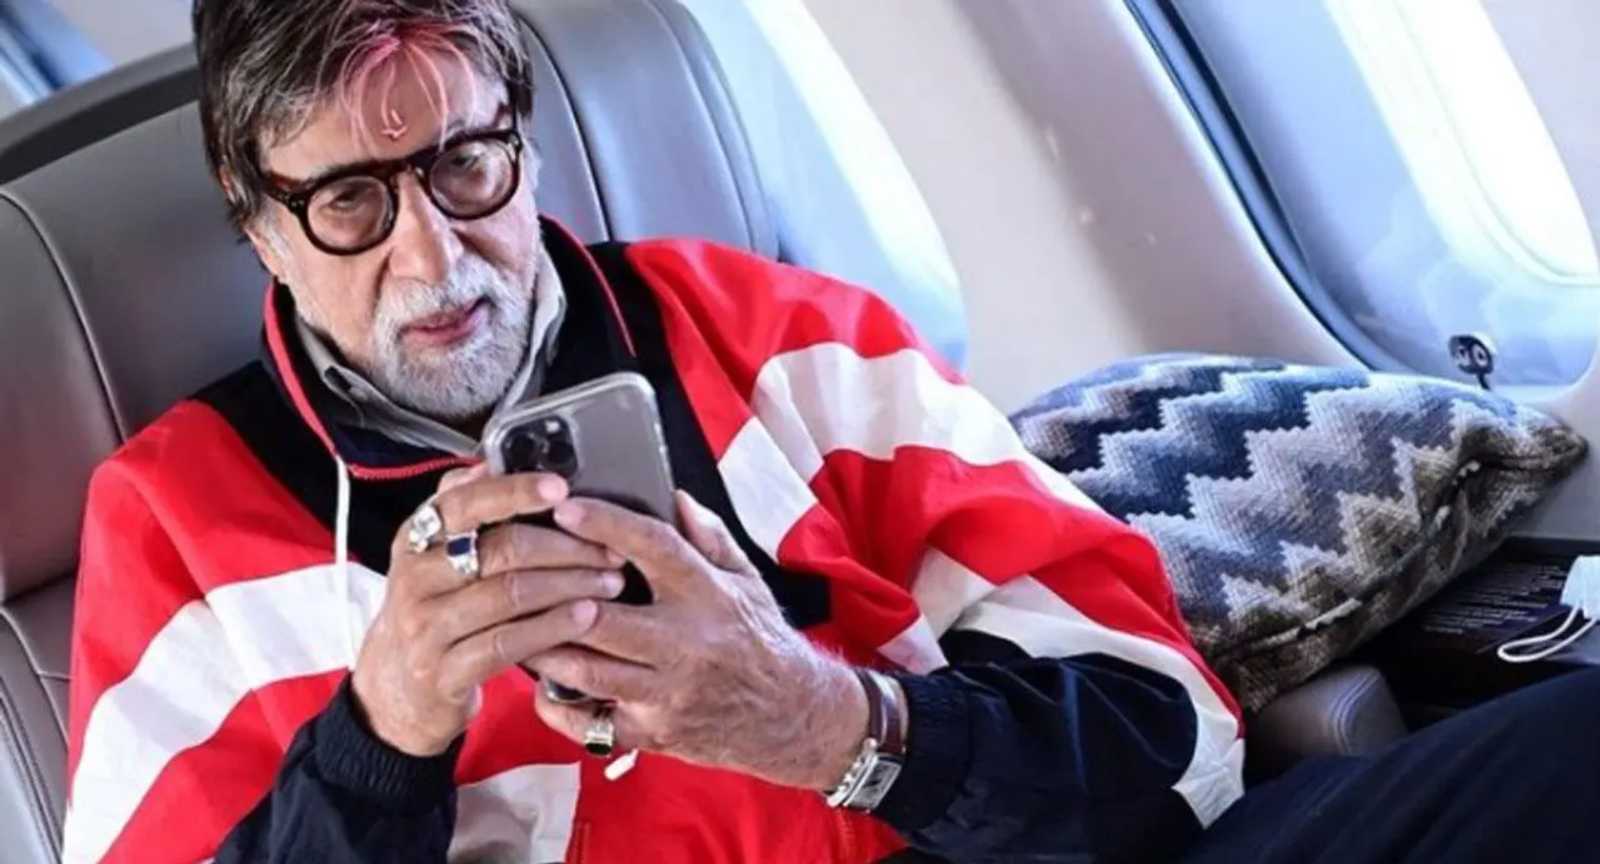 अमिताभ बच्चन की उड़ गई है रातों की नींद, 2 बजे ट्वीट किया तो लोग बोले- 'कोई इनसे मोबाइल लो रे...'